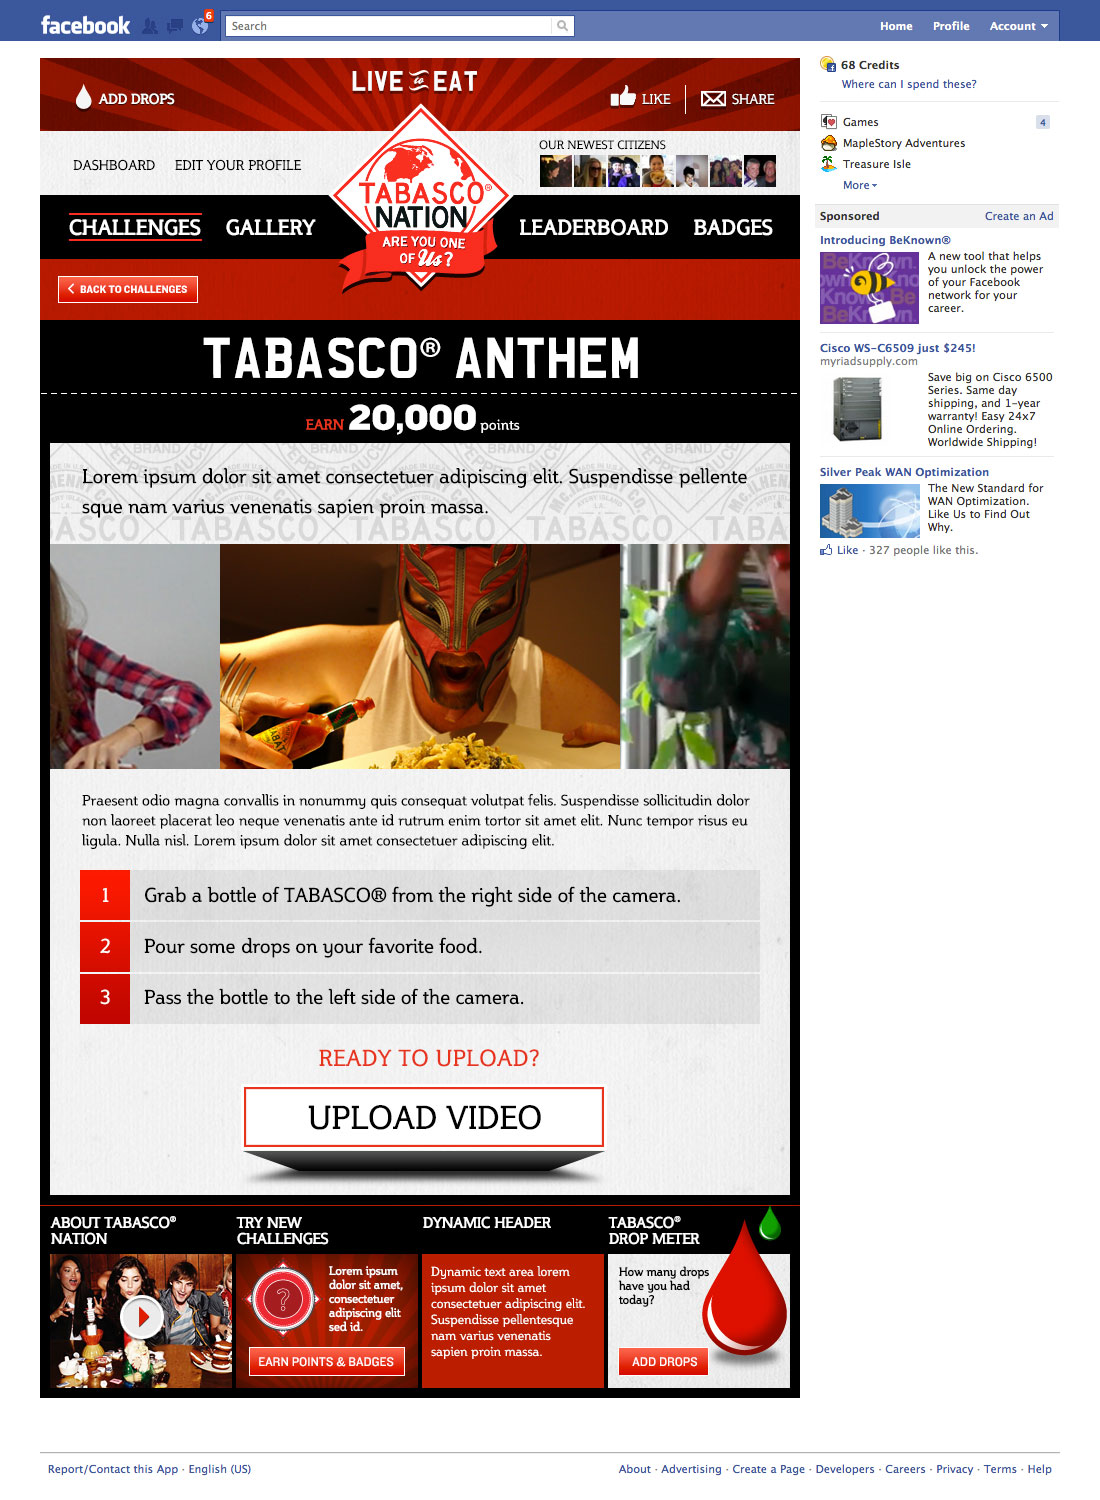 tabasco-fb-TN-app-7